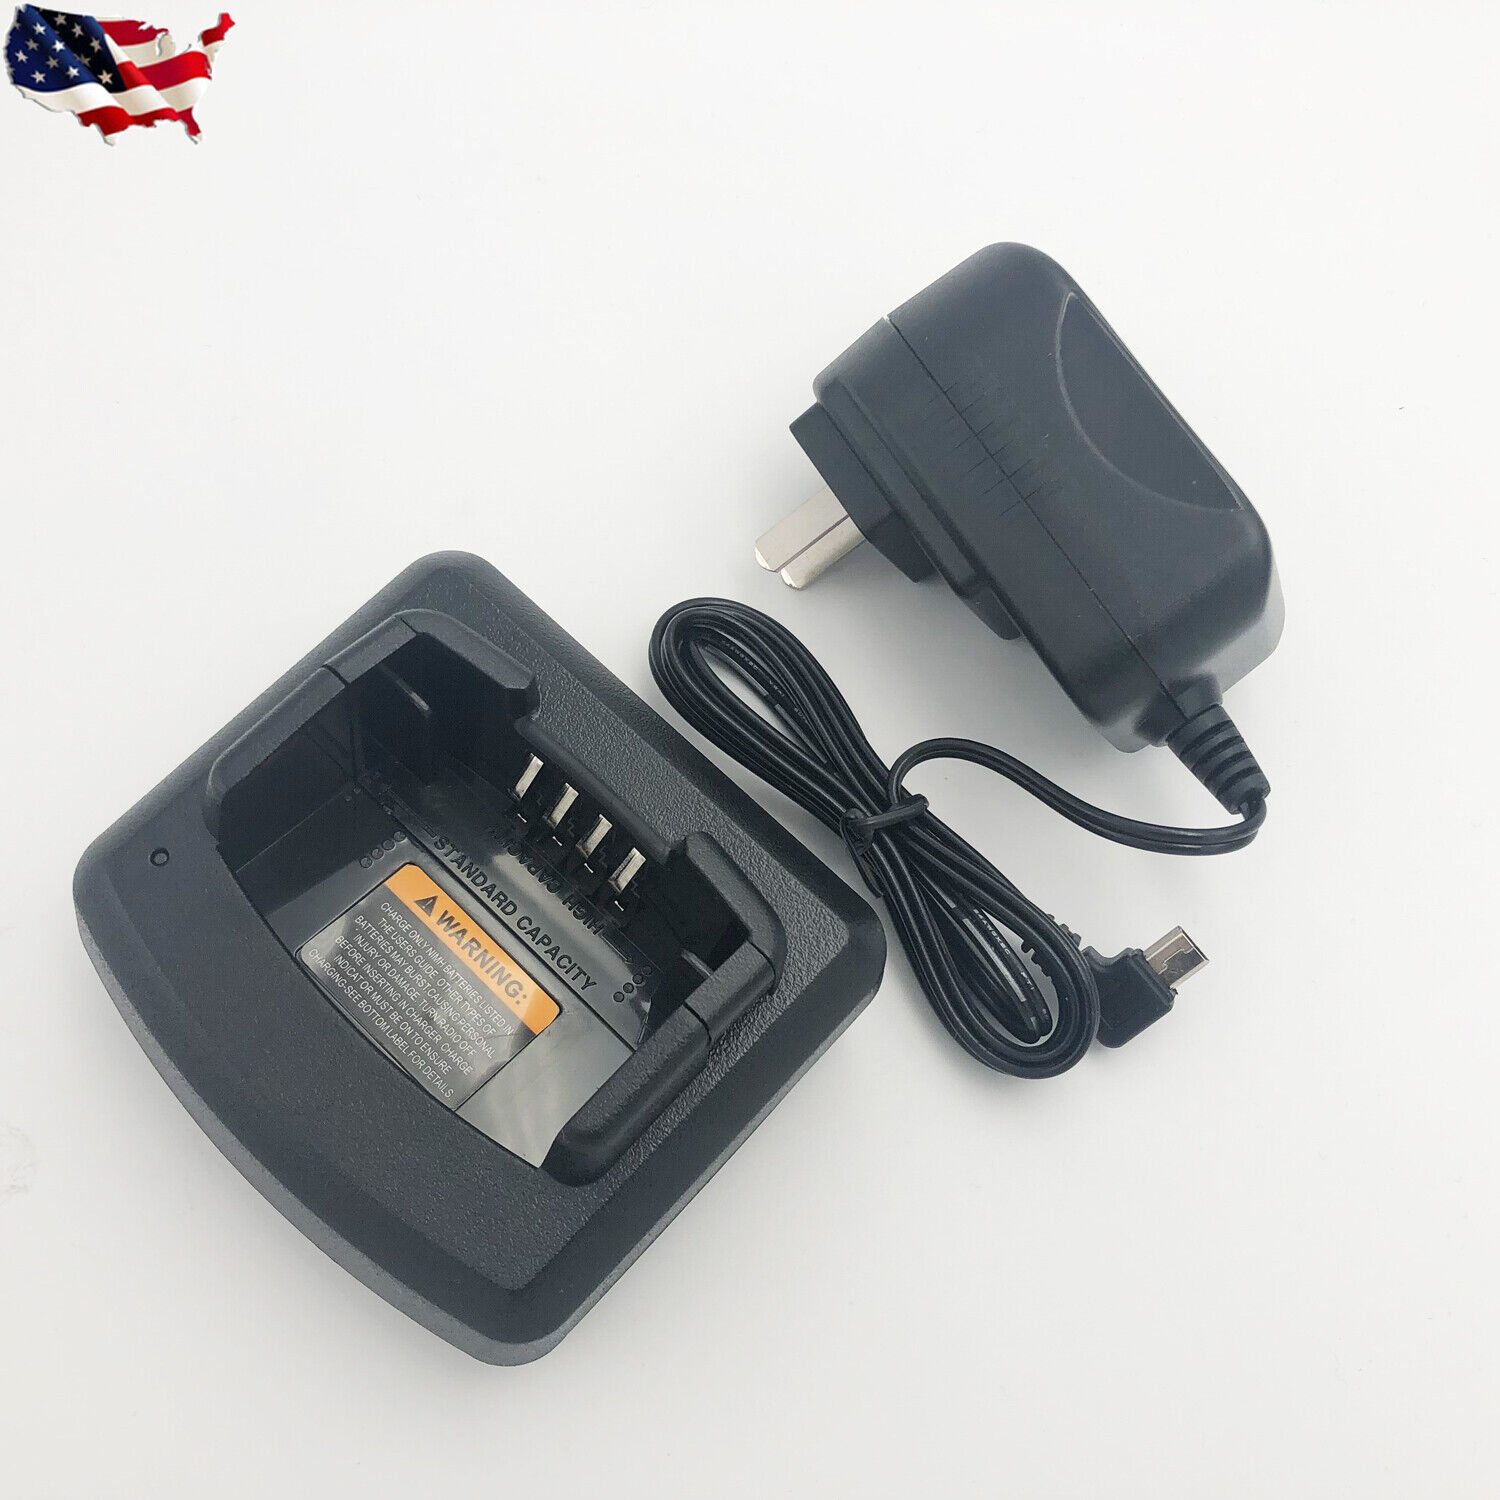 Portable Battery Charger For Motorola A12 Ep150 Rdm2020 Rdm2070D Portable - $38.99